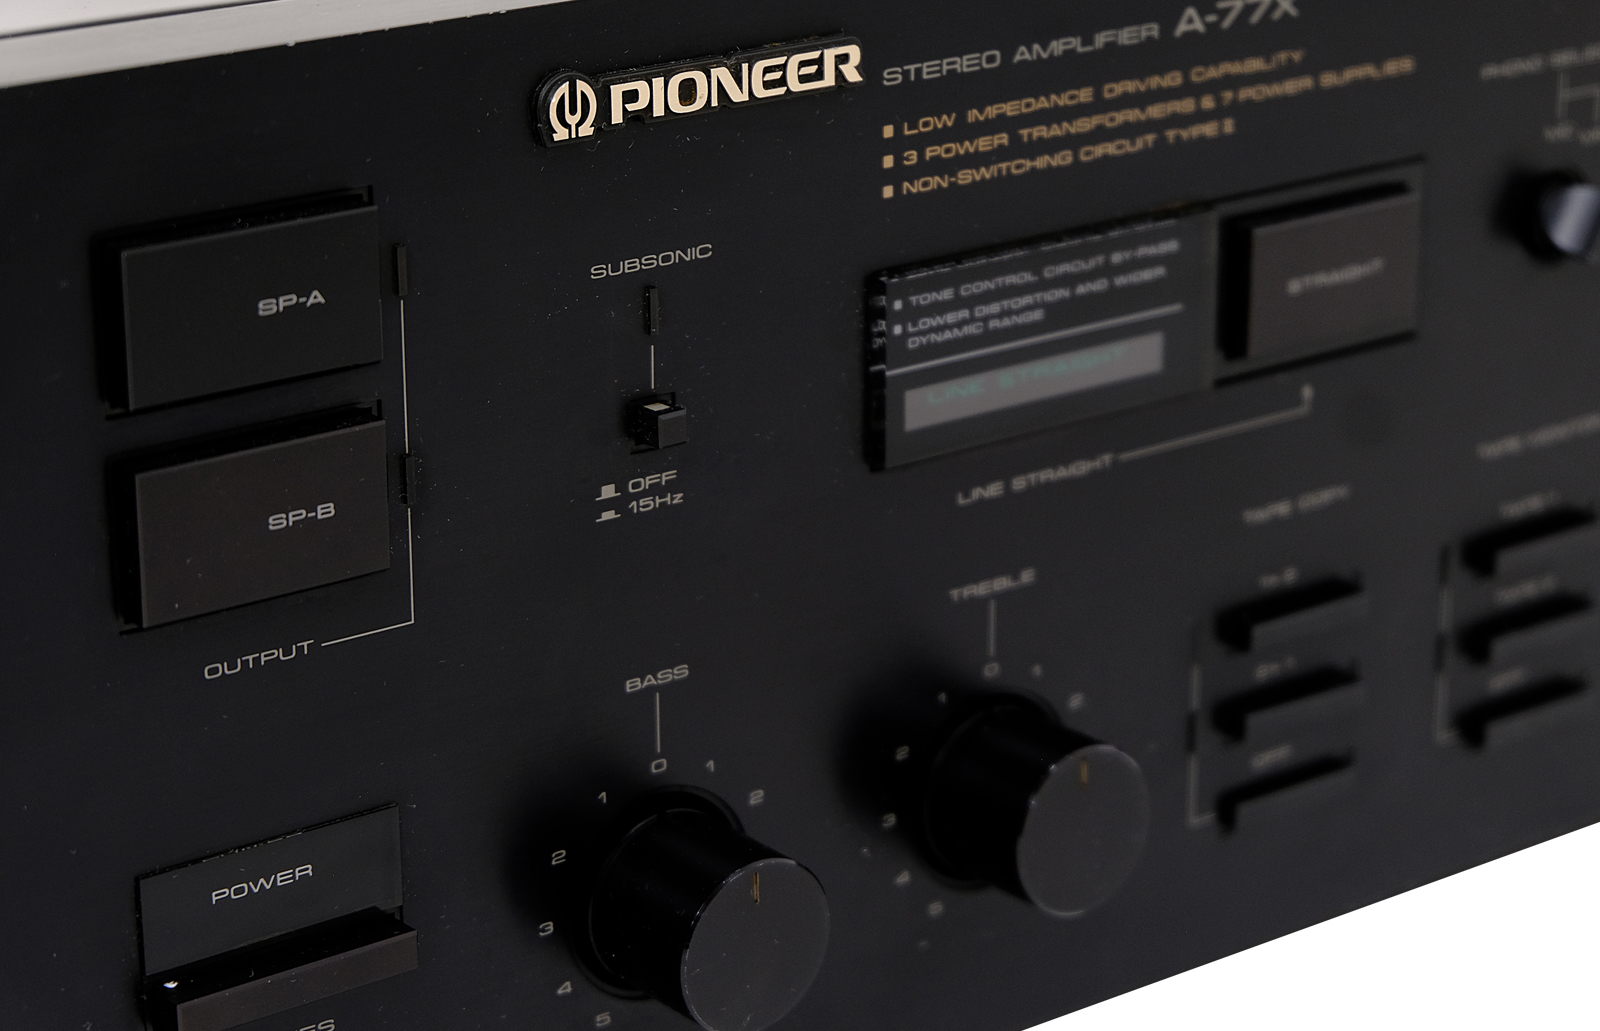 Pioneer A 77X amplifier